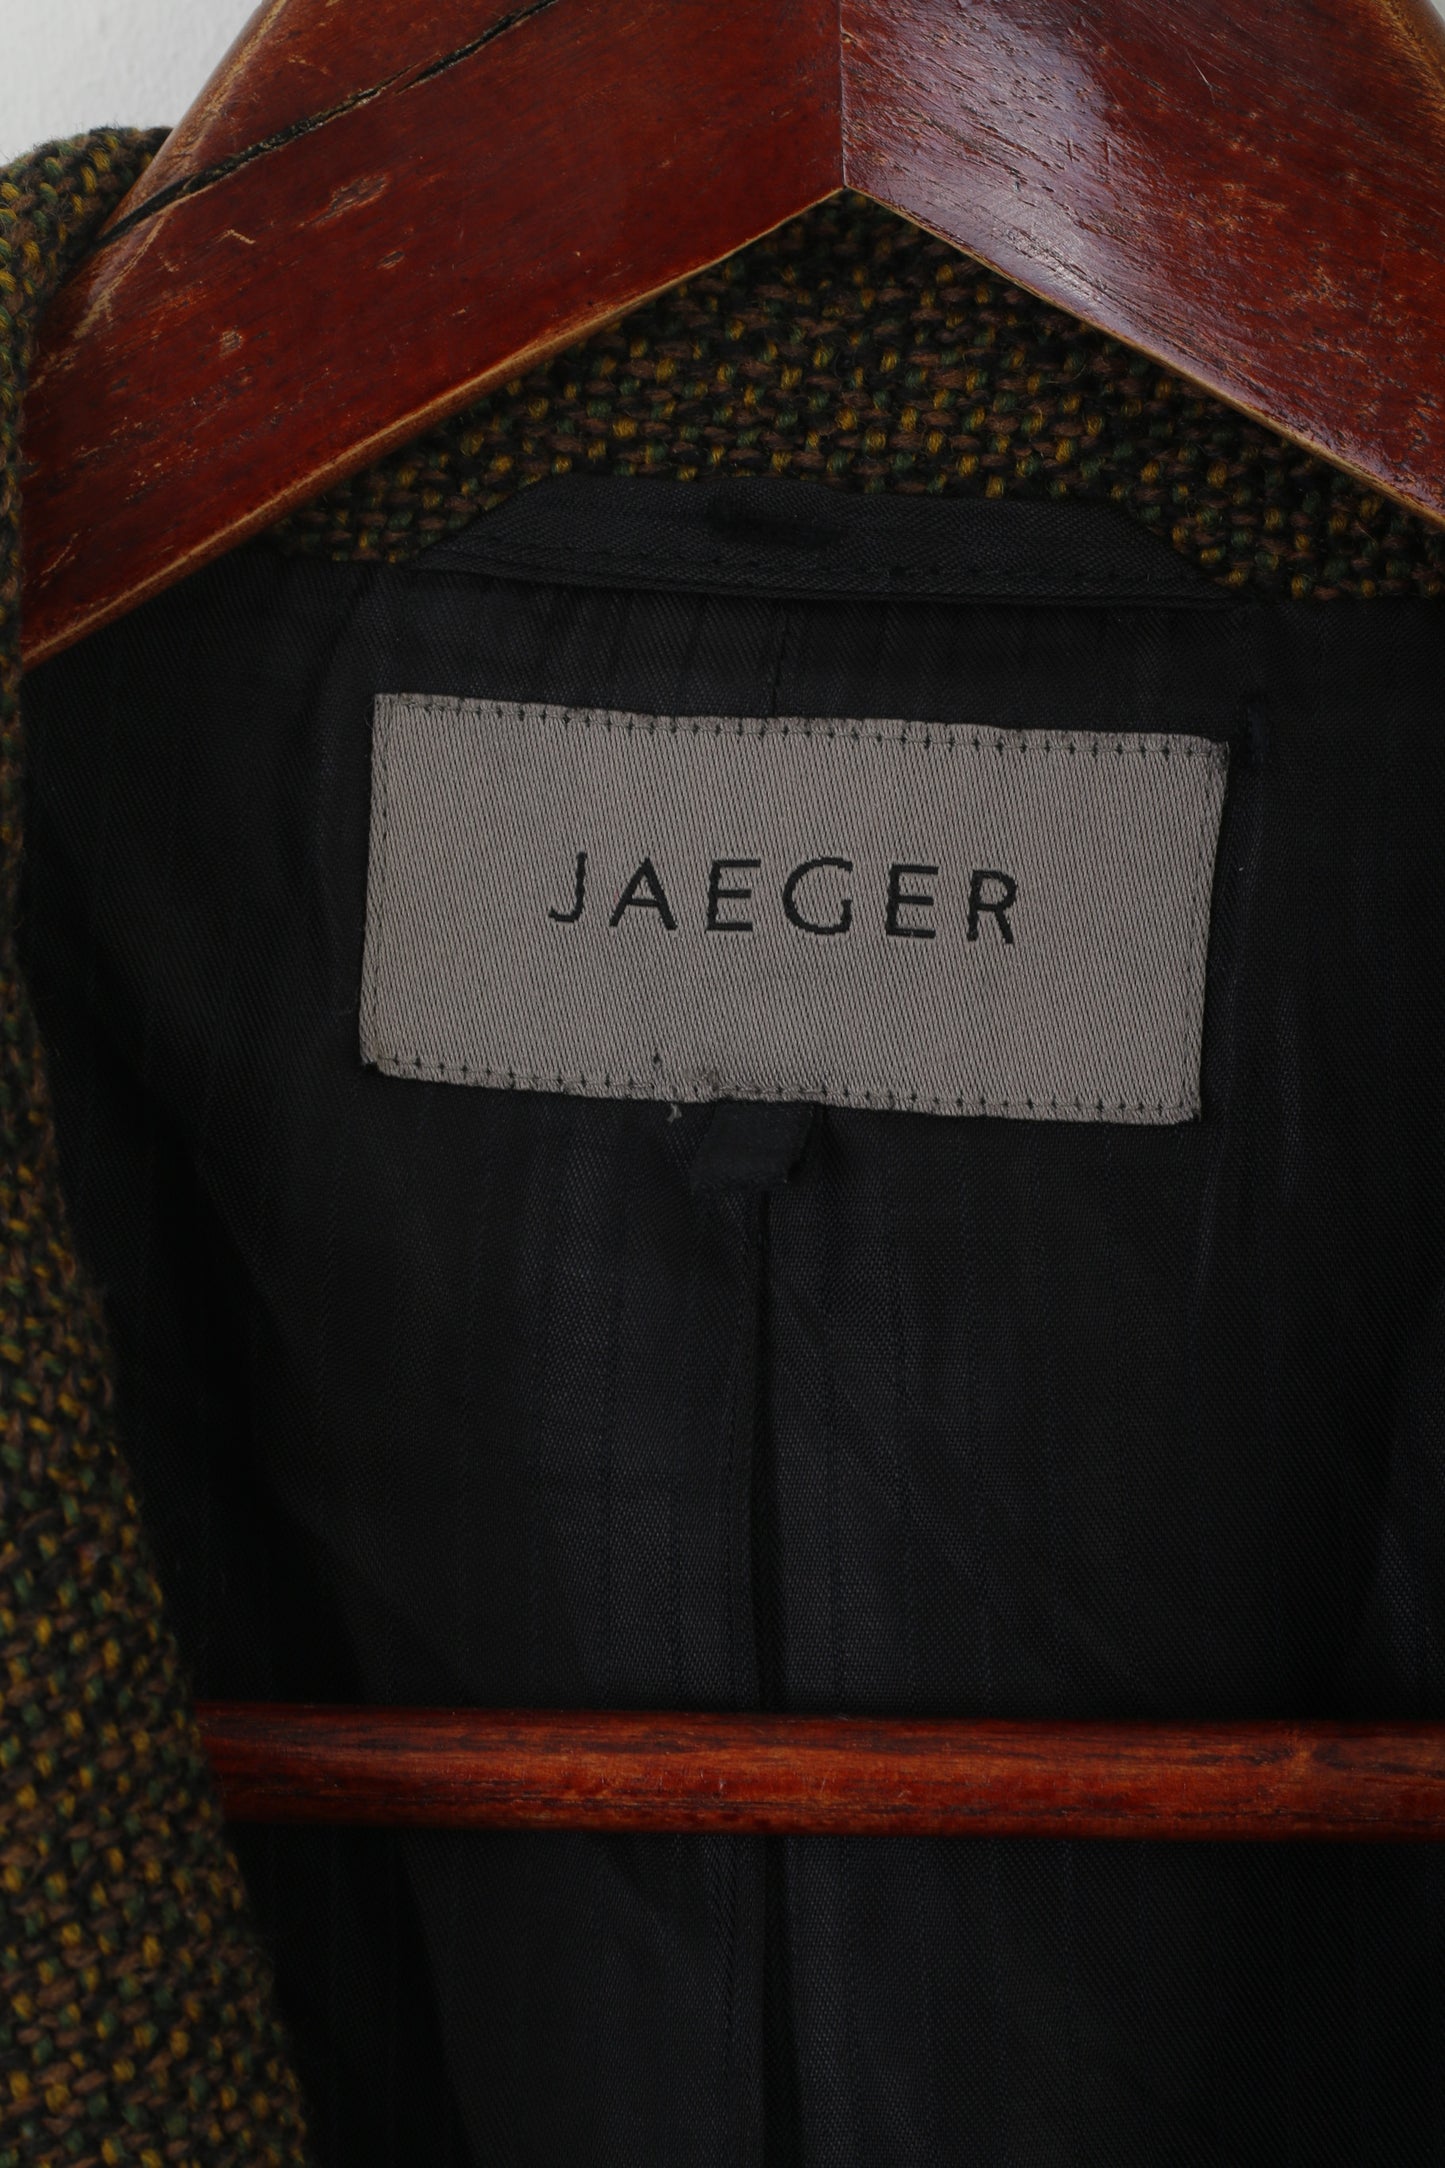 Giacca retrò Jaeger da donna 16 XL Blazer verde marrone in lana vintage con spalline